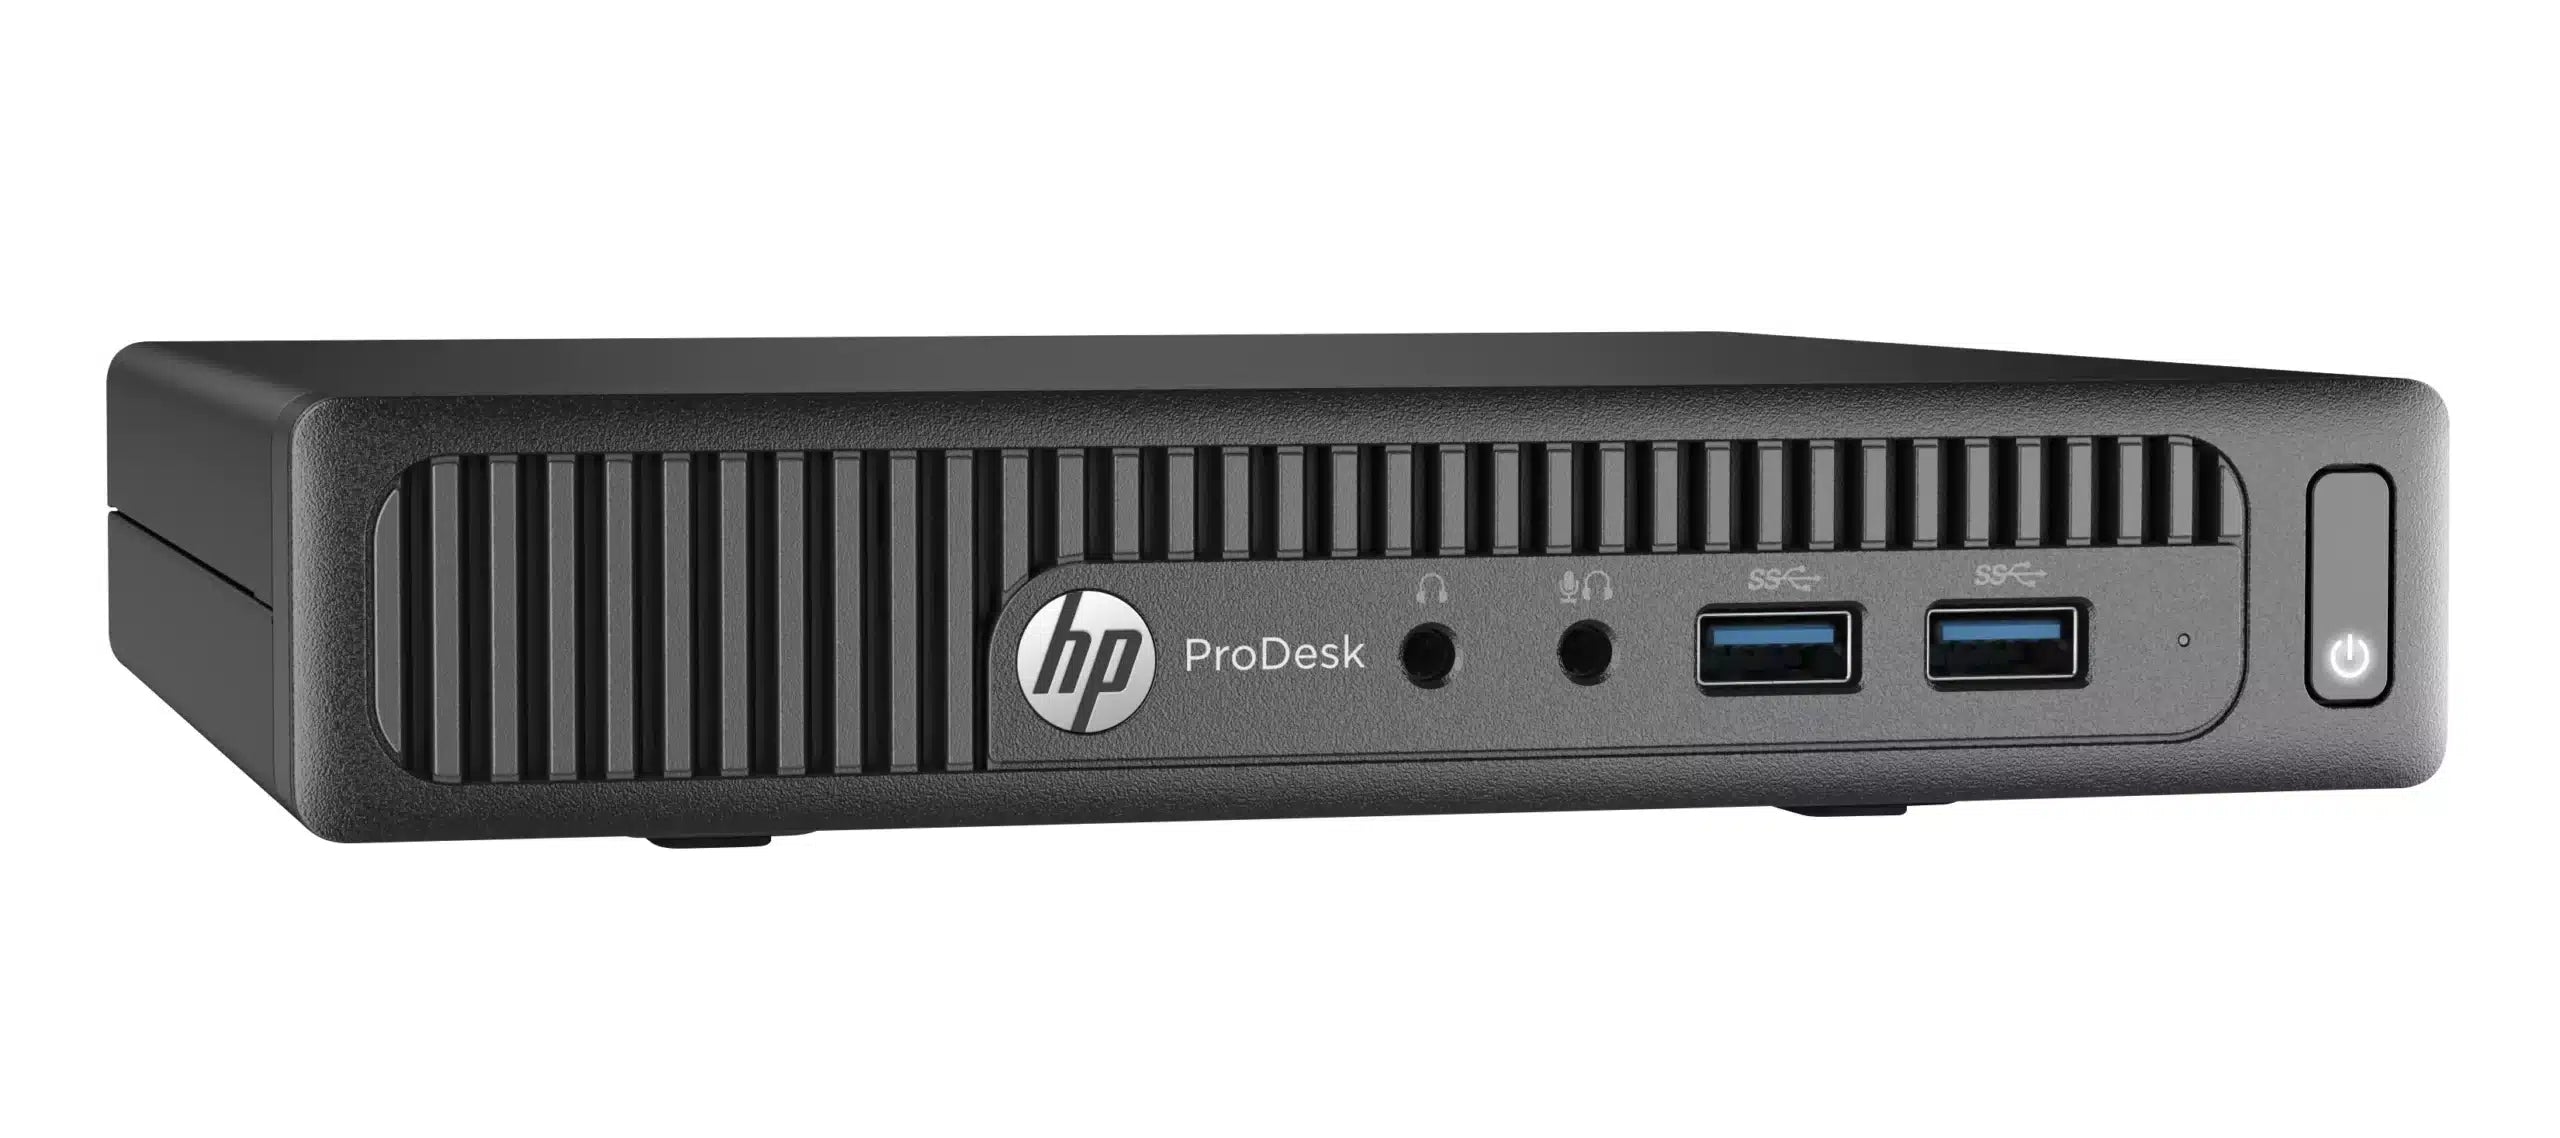 HP Prodesk 400 g2 Mini